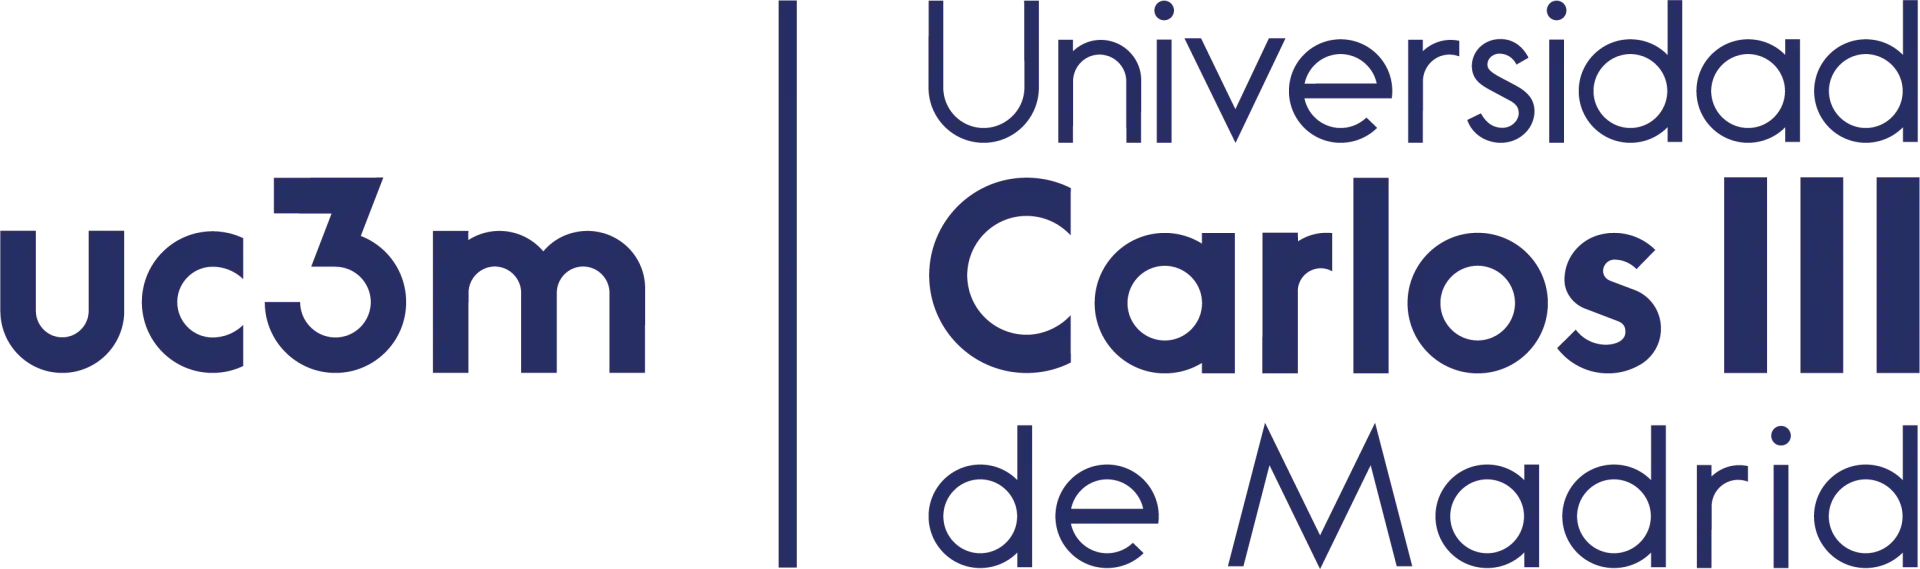 Logo Universidad Carlos III de Madrid - UC3M